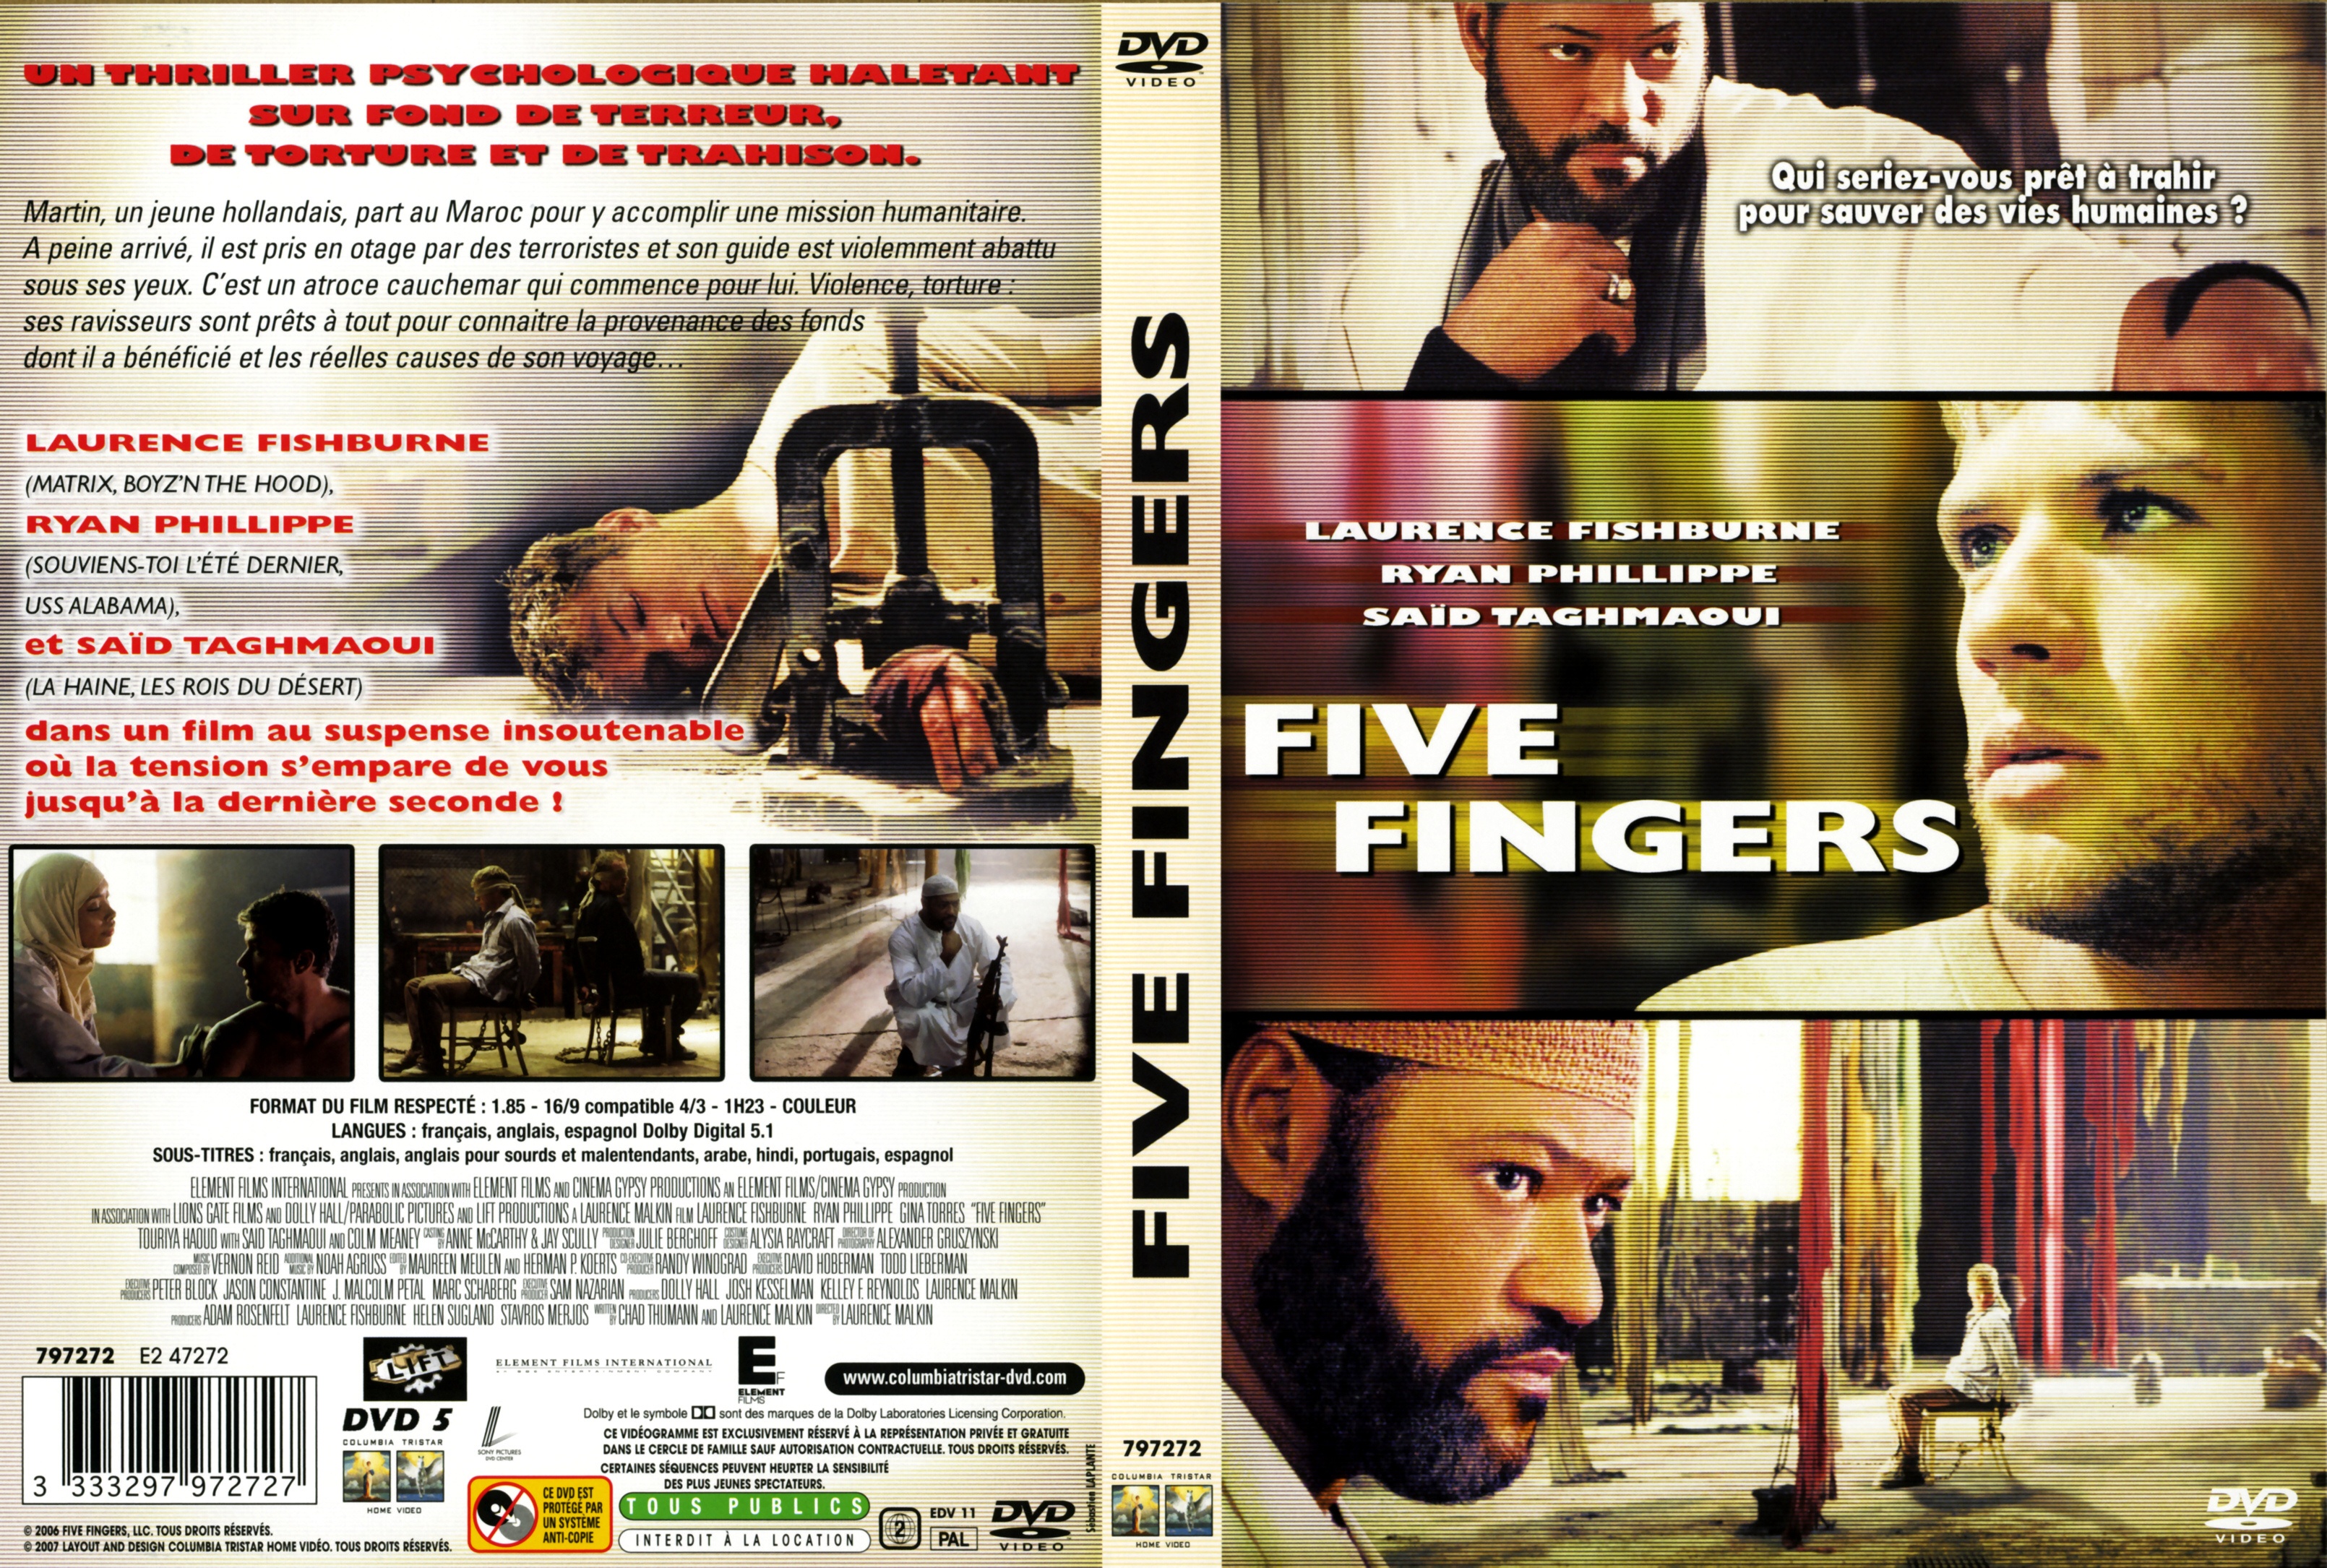 Jaquette DVD Five fingers